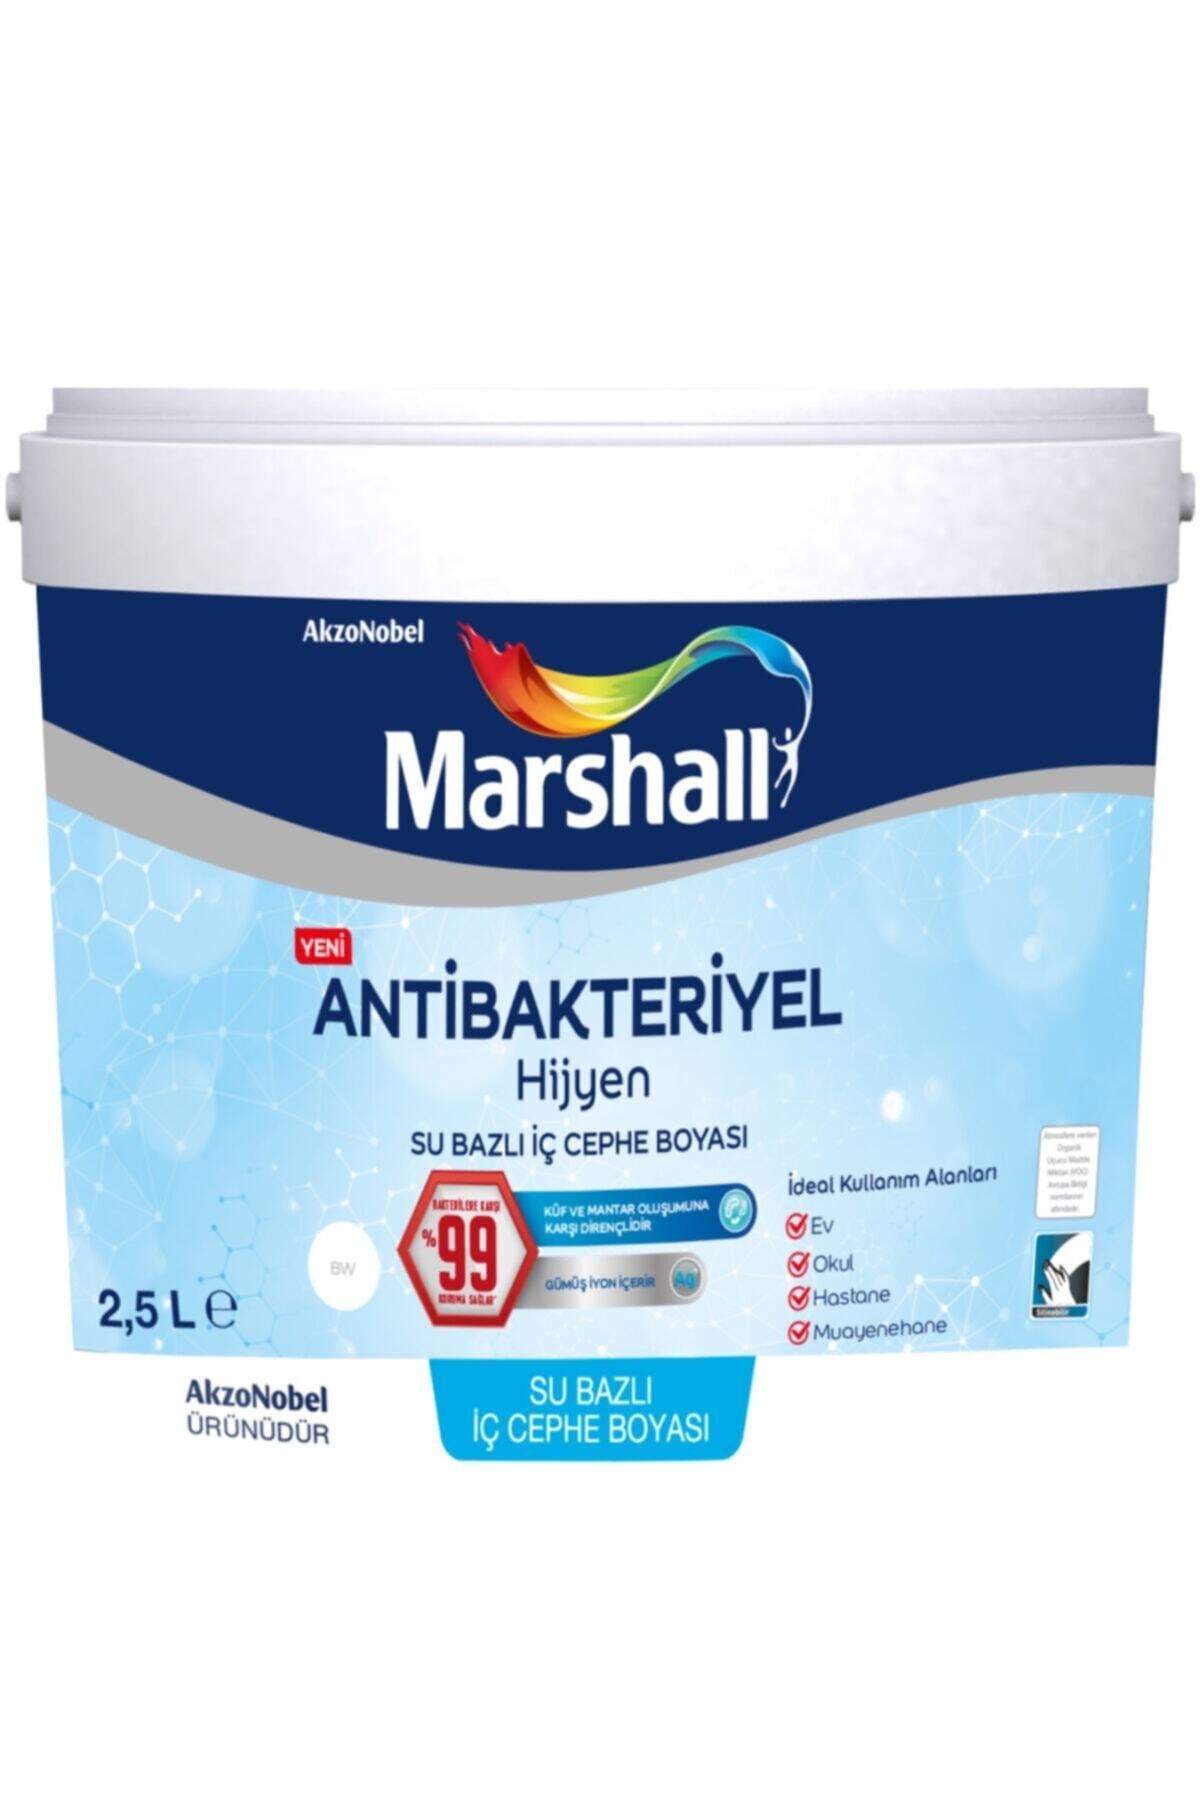 Marshall Antibakteriyel Hijyen Iç Cephe Duvar Boyası 2,5 Lt Tütsü